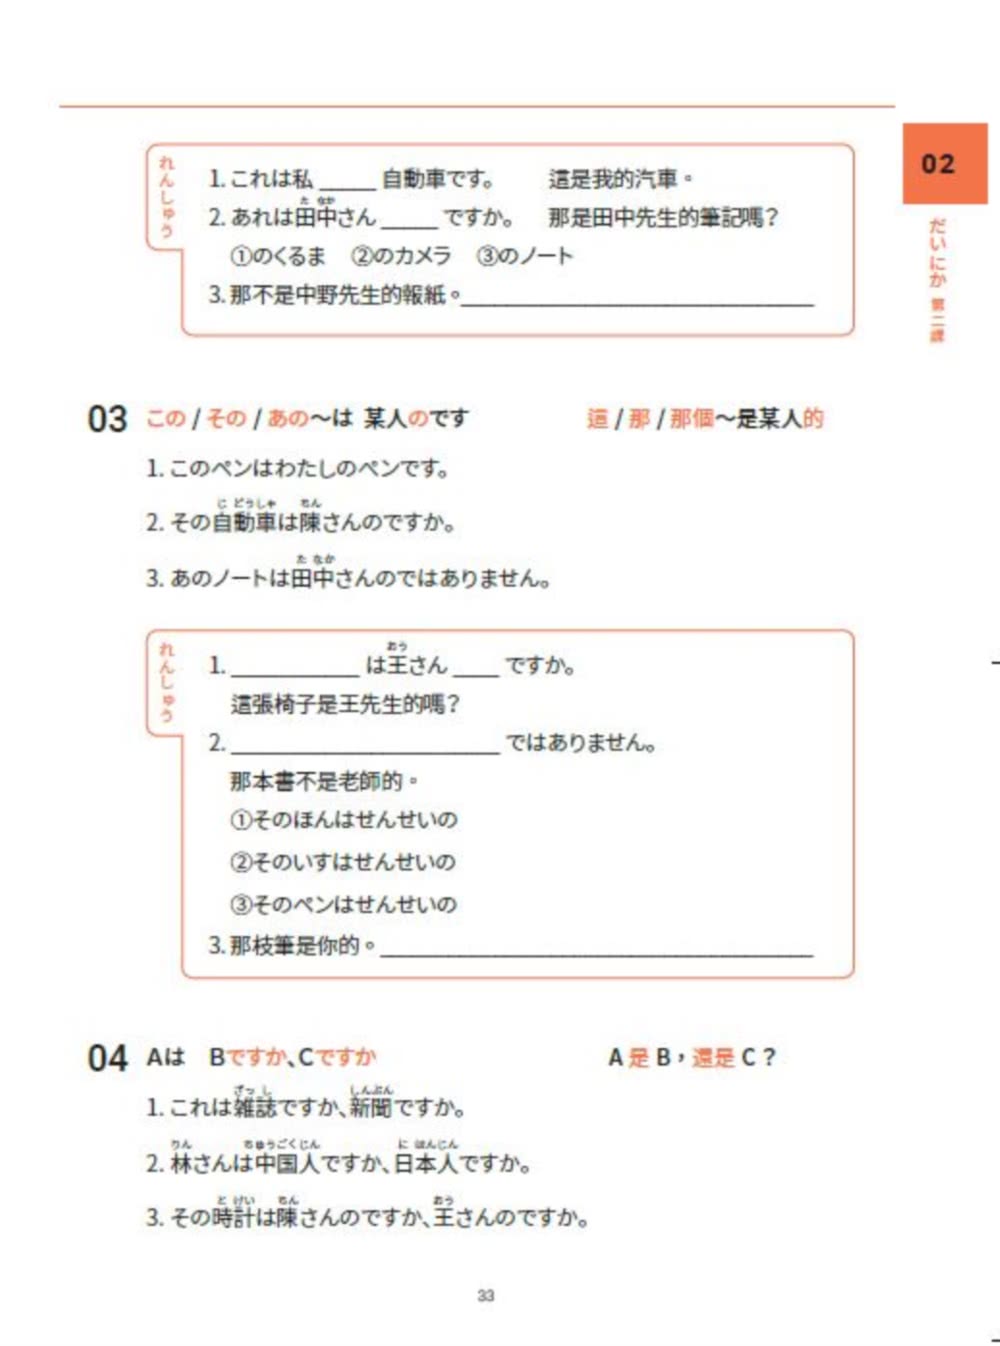 大家一起學習日文吧！王可樂日語初級直達車1：詳盡文法、大量練習題、豐富附錄